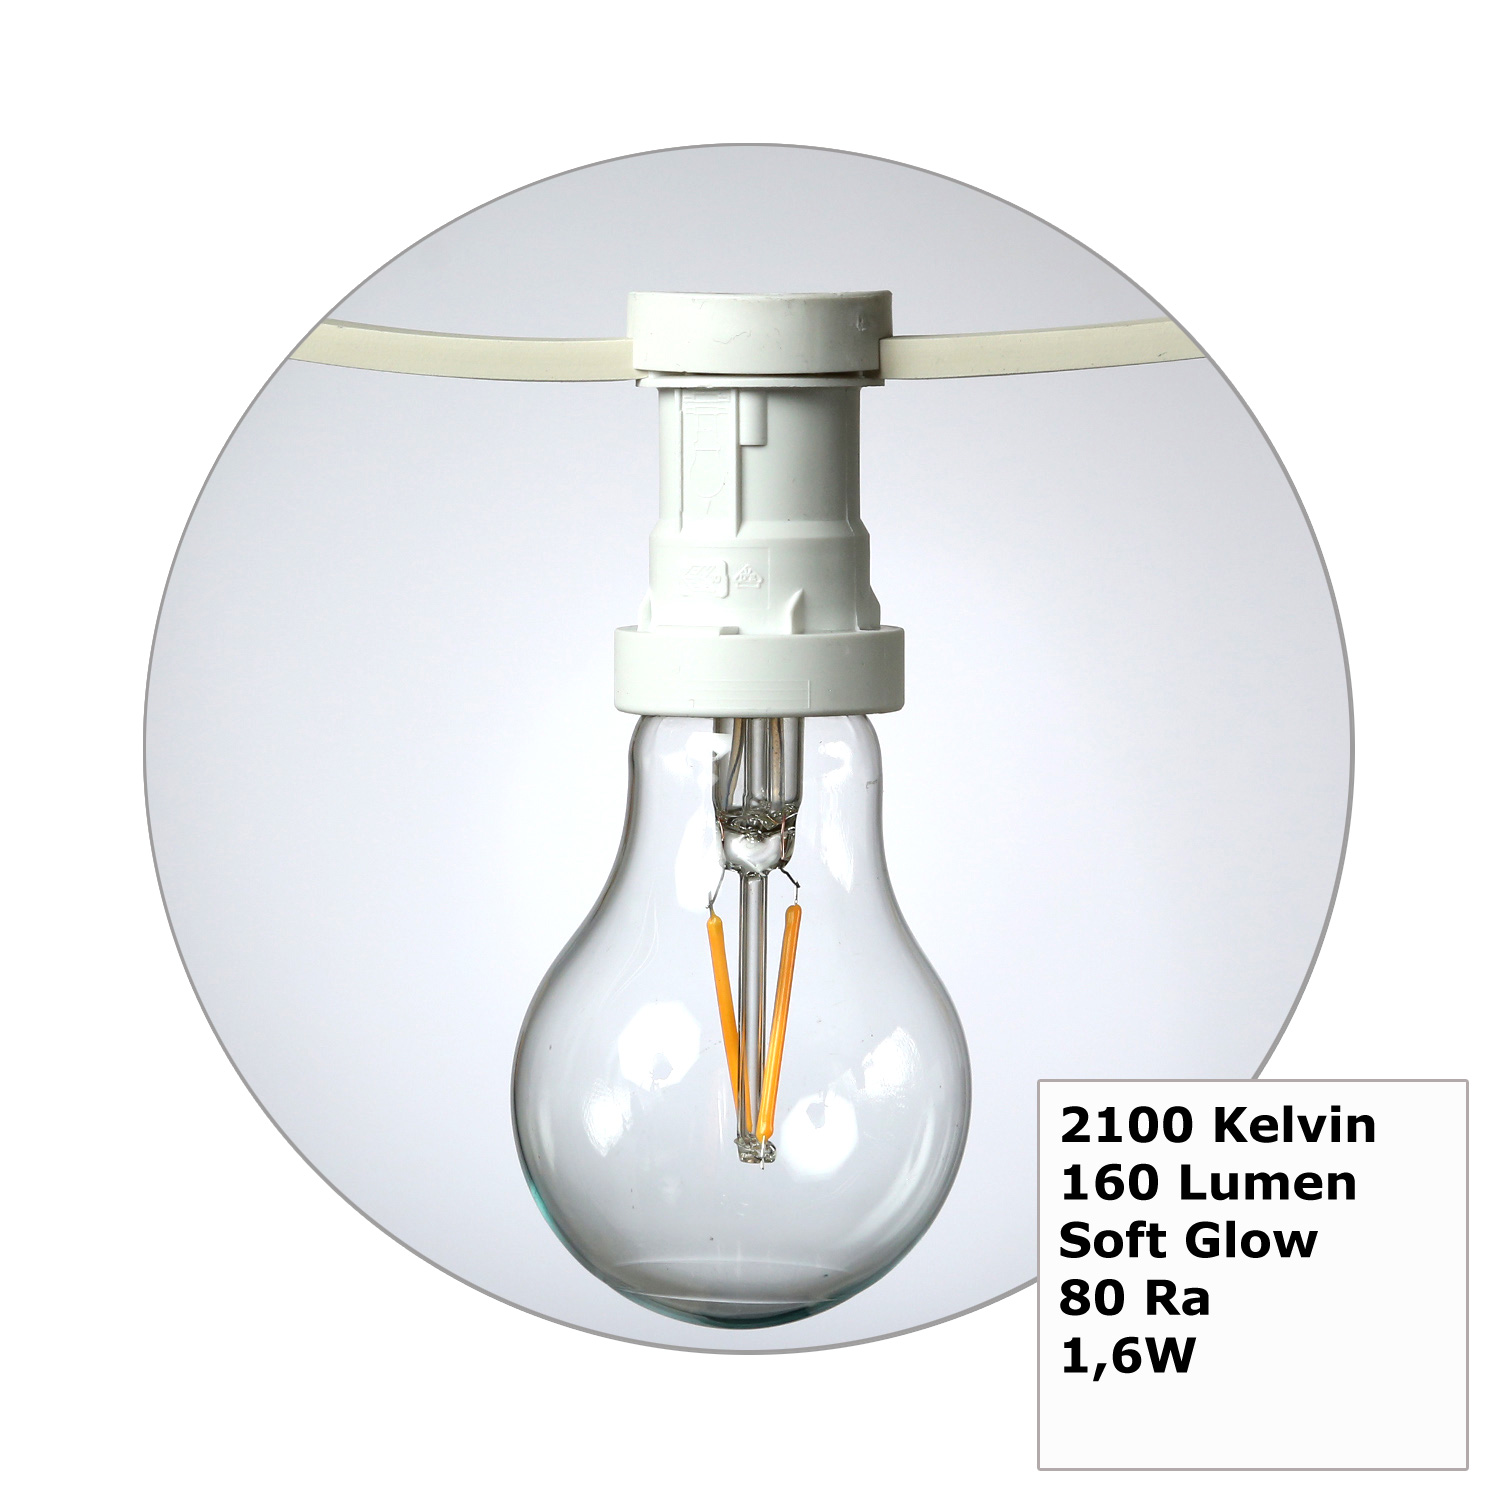 Illu-/Partylichterkette 5m - Außenlichterkette weiß - Made in Germany - 5 Edison LED Filamentlampen